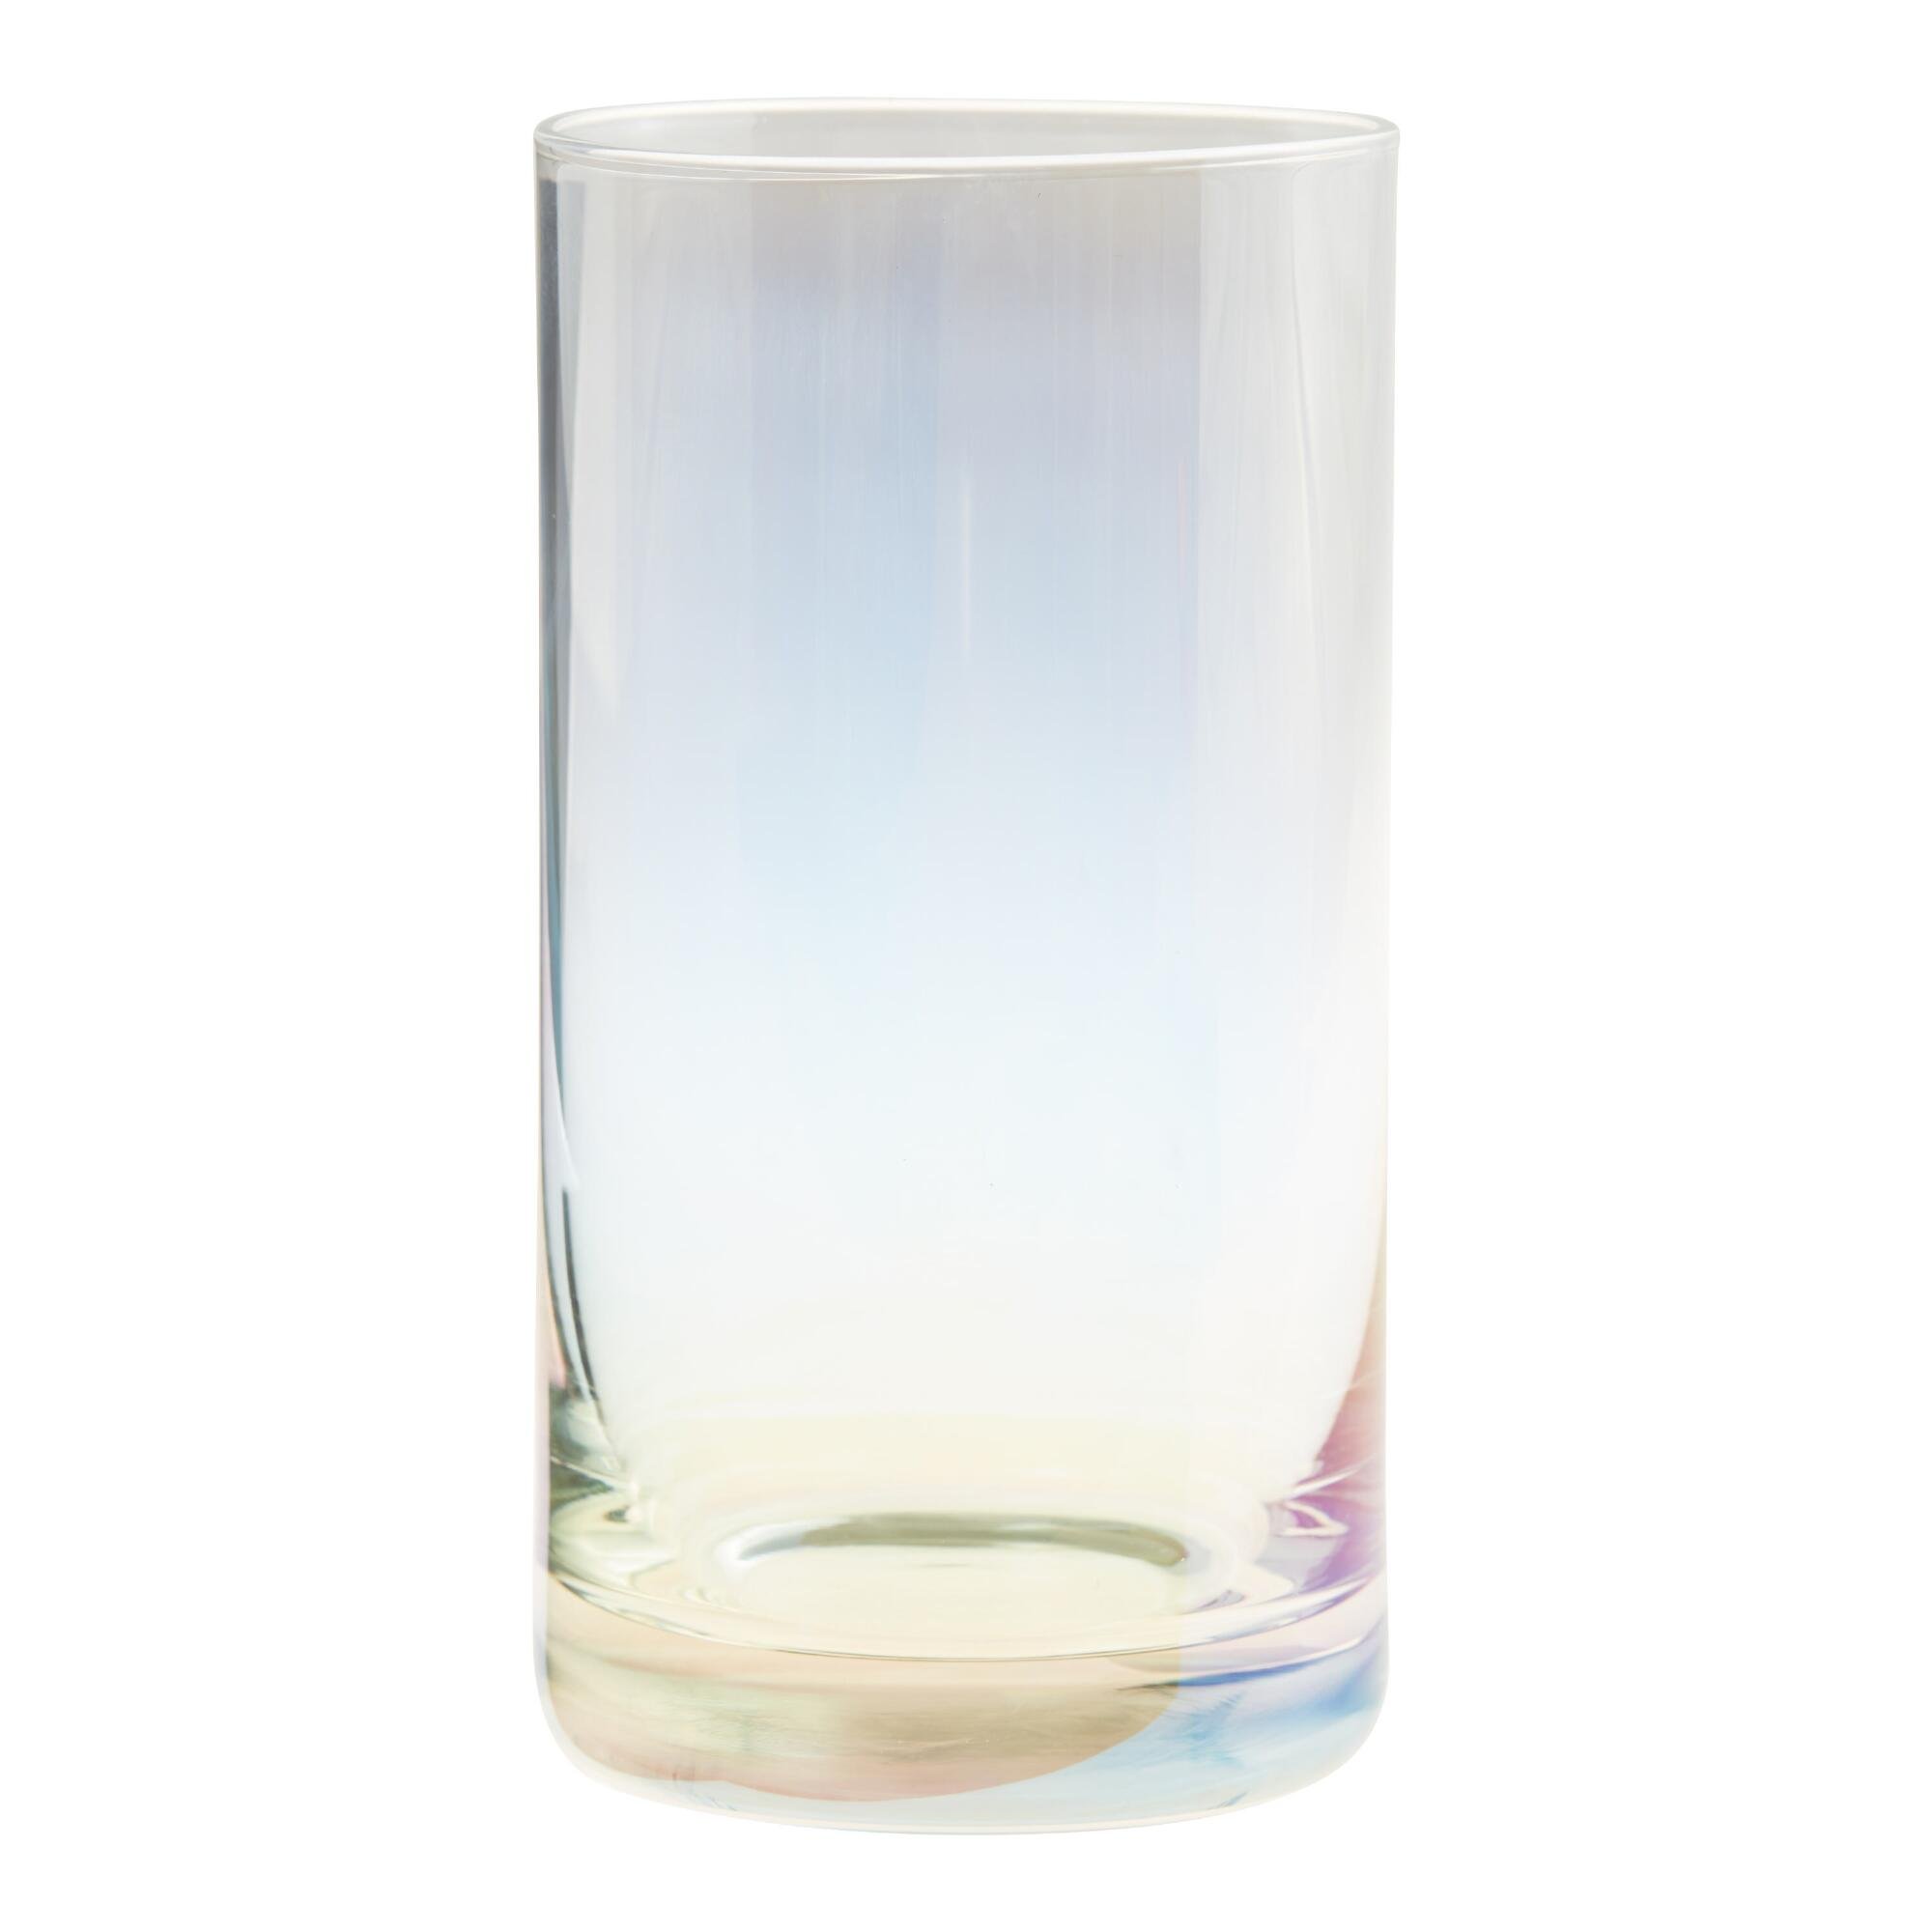 Iridescent Highball Glass - $5.99 - World Market